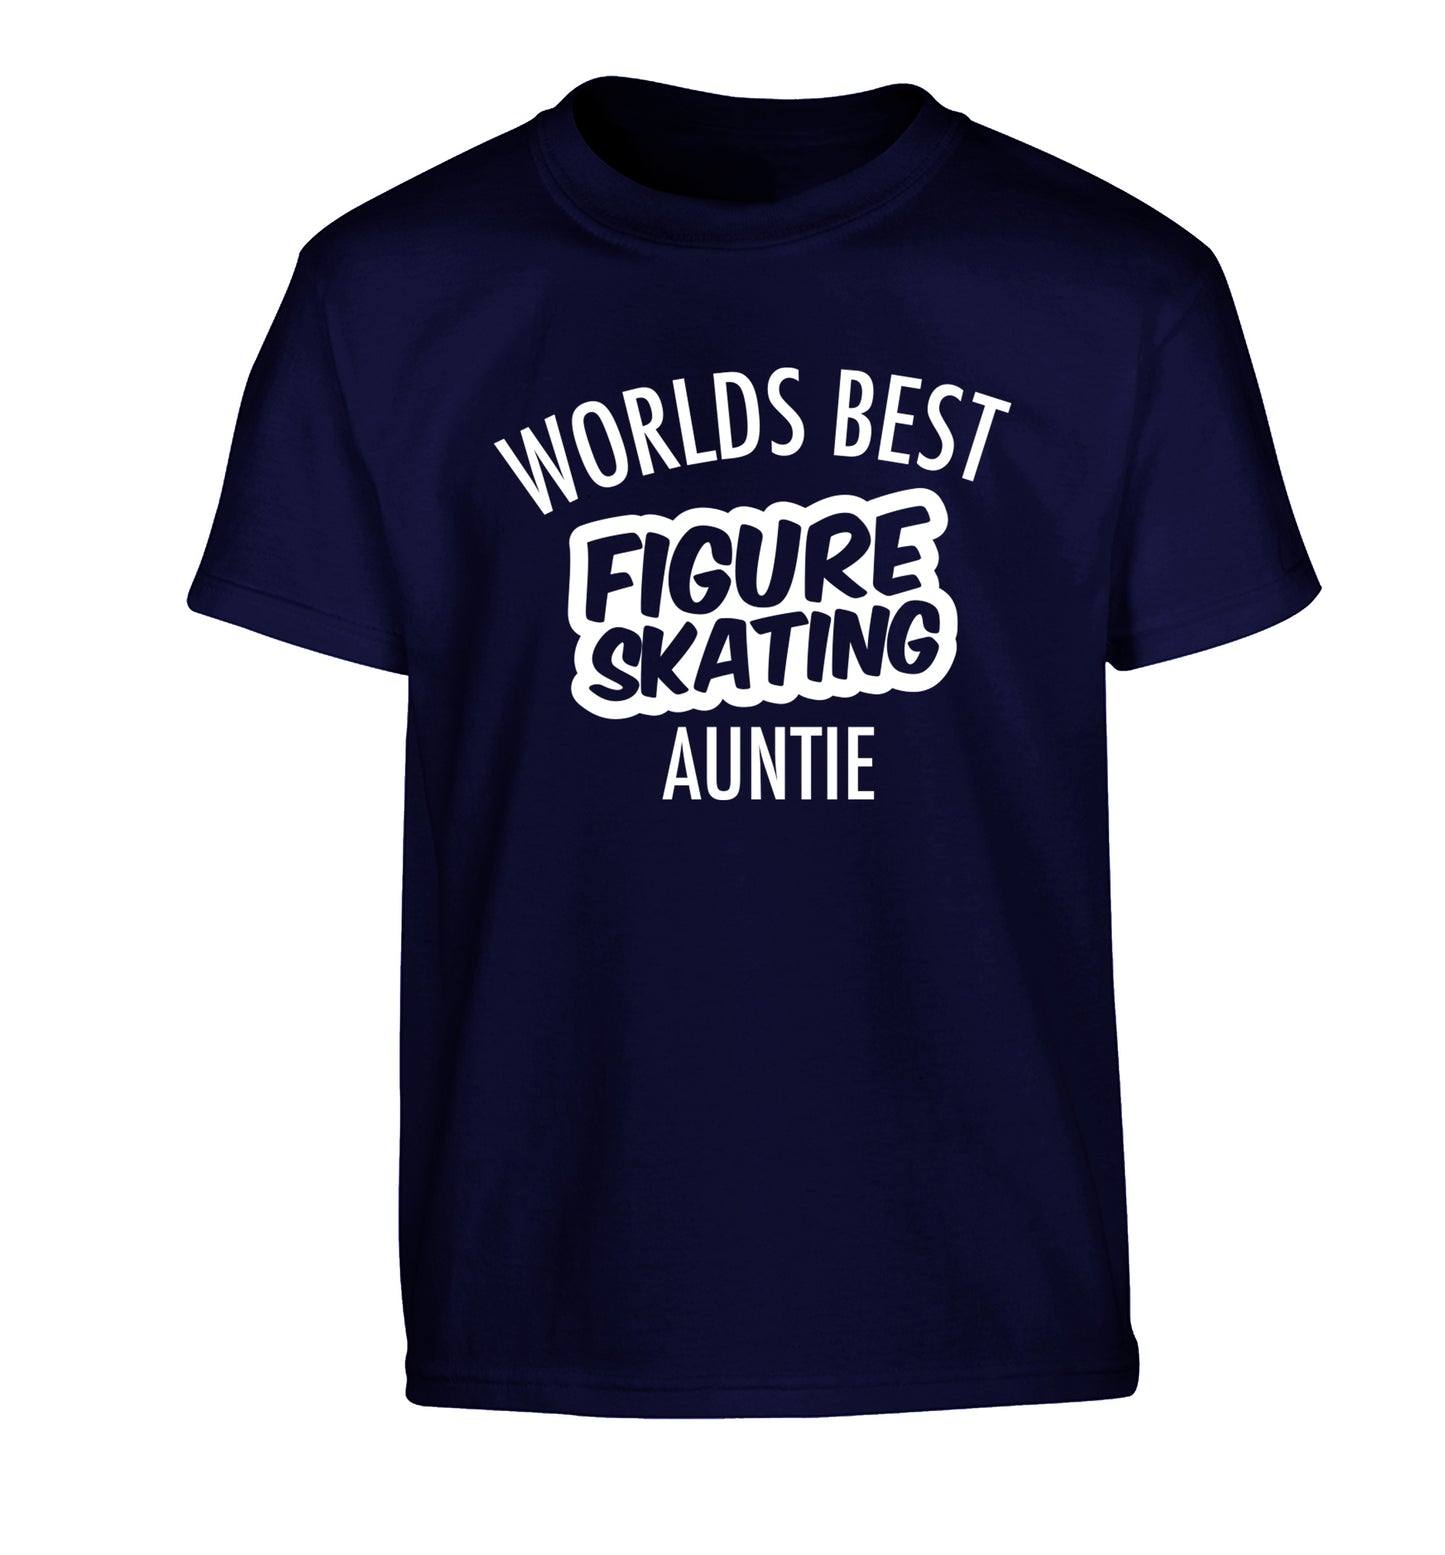 Worlds best figure skating auntie Children's navy Tshirt 12-14 Years